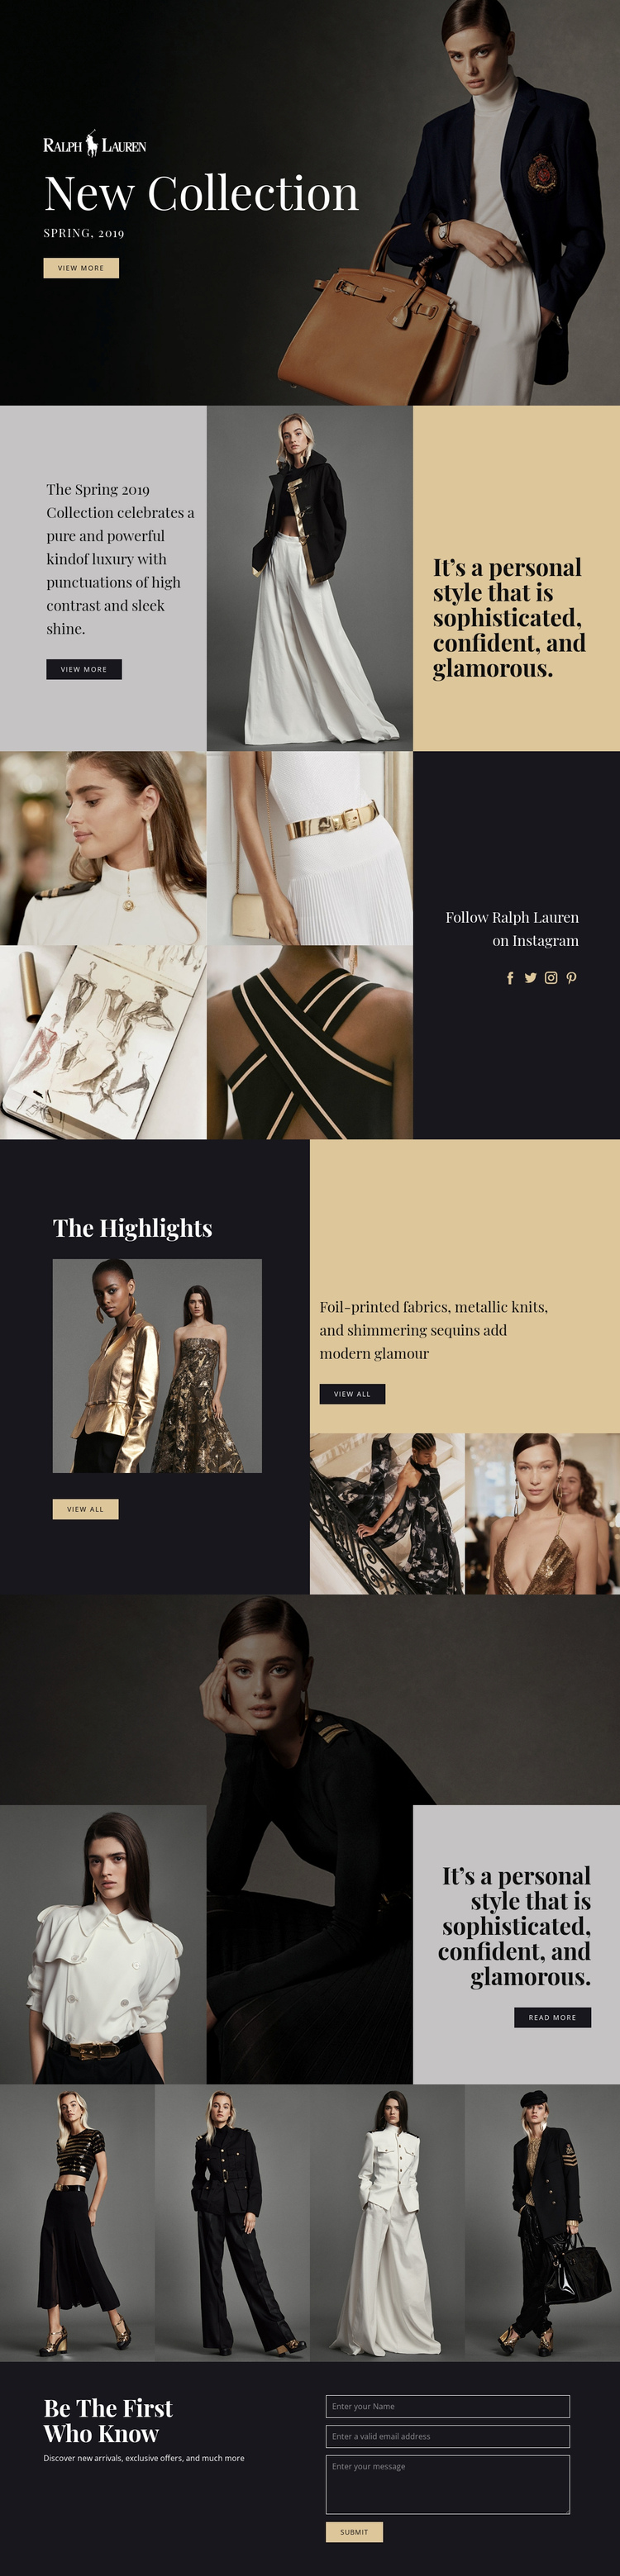 Ralph Lauren fashion Website Builder Software